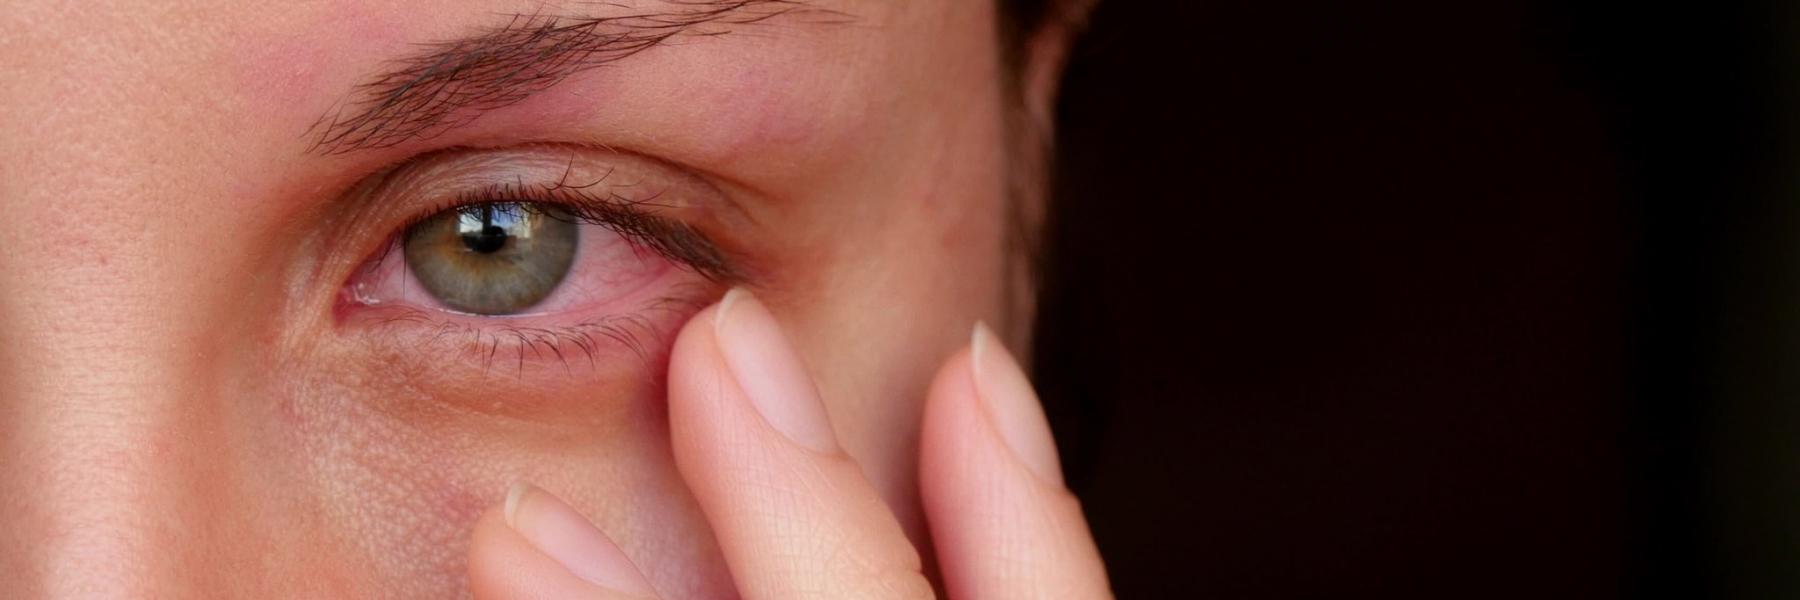 5 مشكلات للعيون تسببت  جائحة كورونا في انتشارها